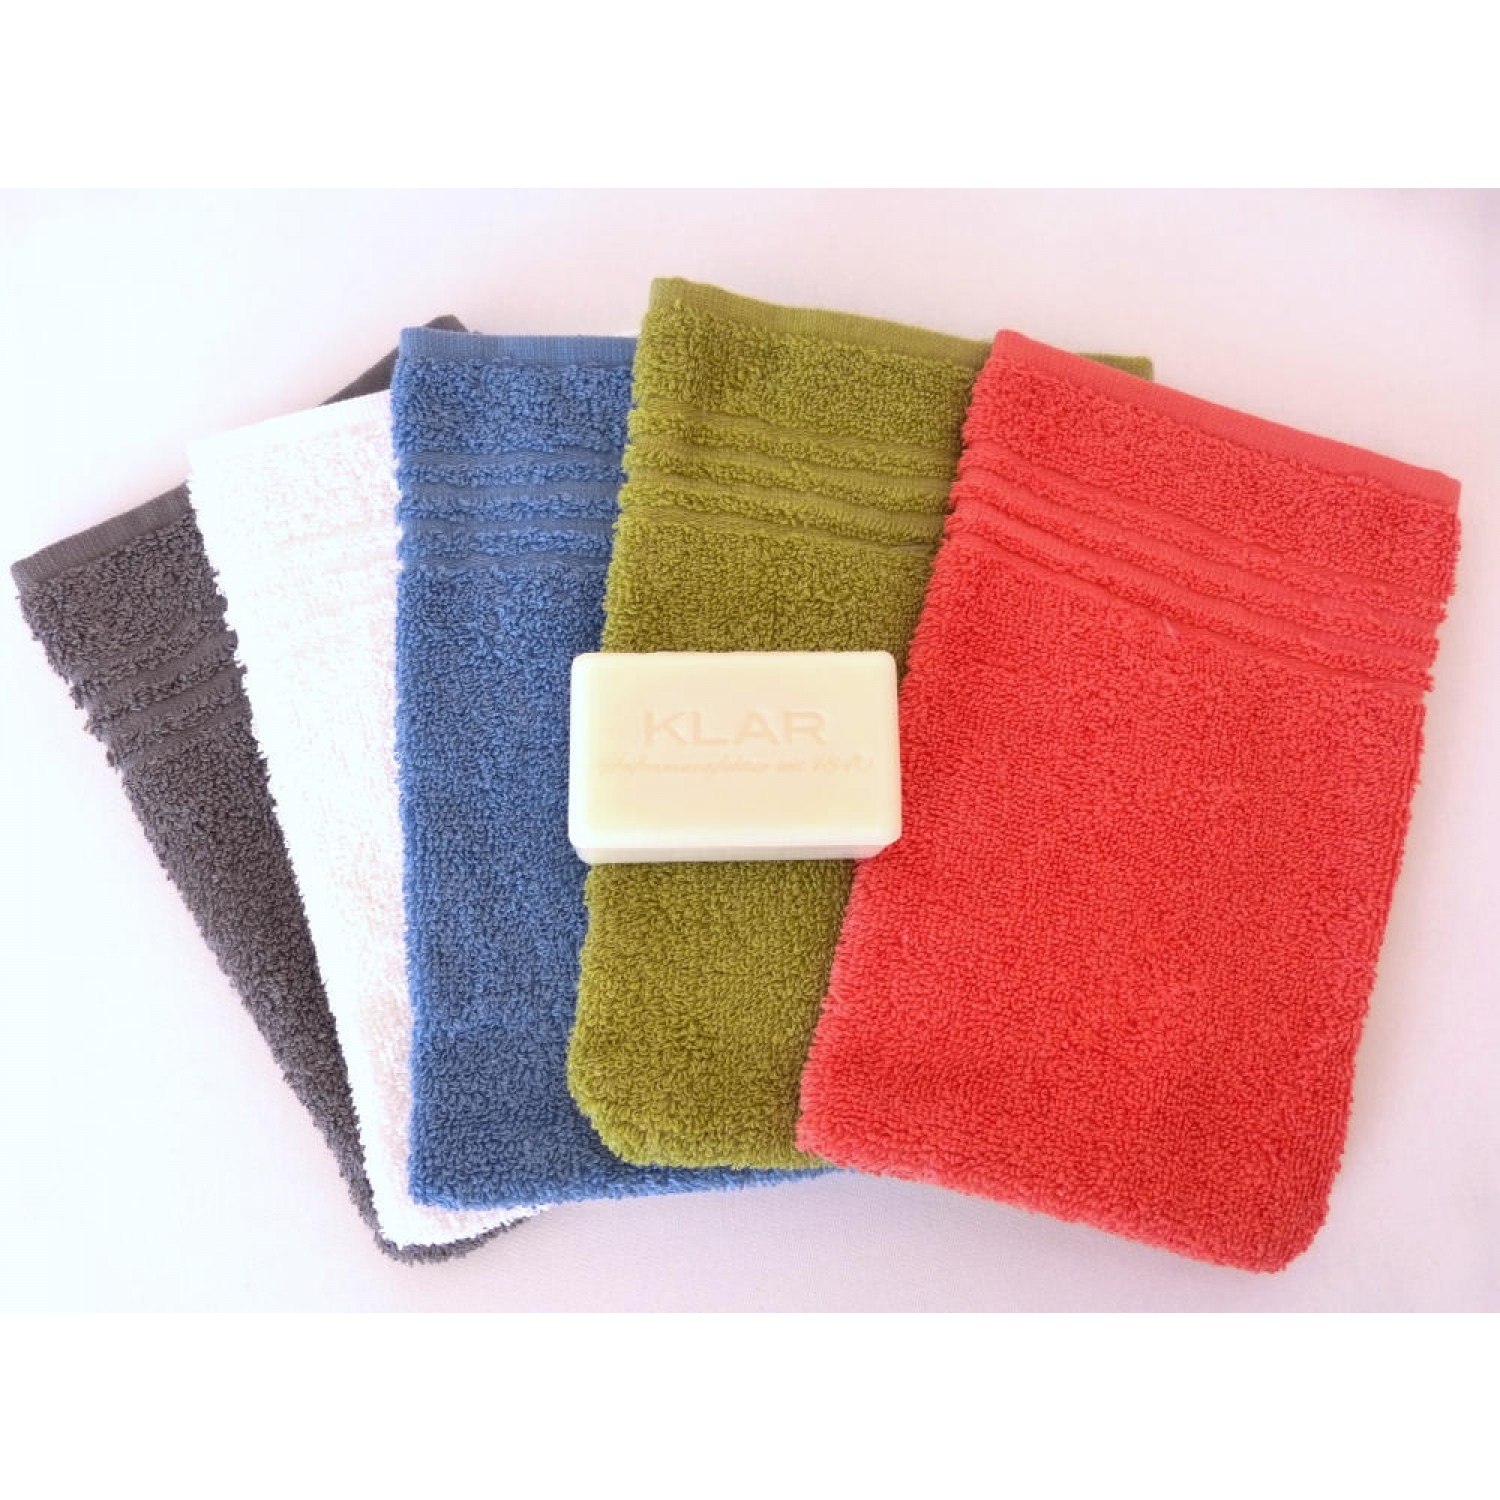 Body Care Gift Set - Fair Trade Cotton Face Cloth & vegan Curd Soap